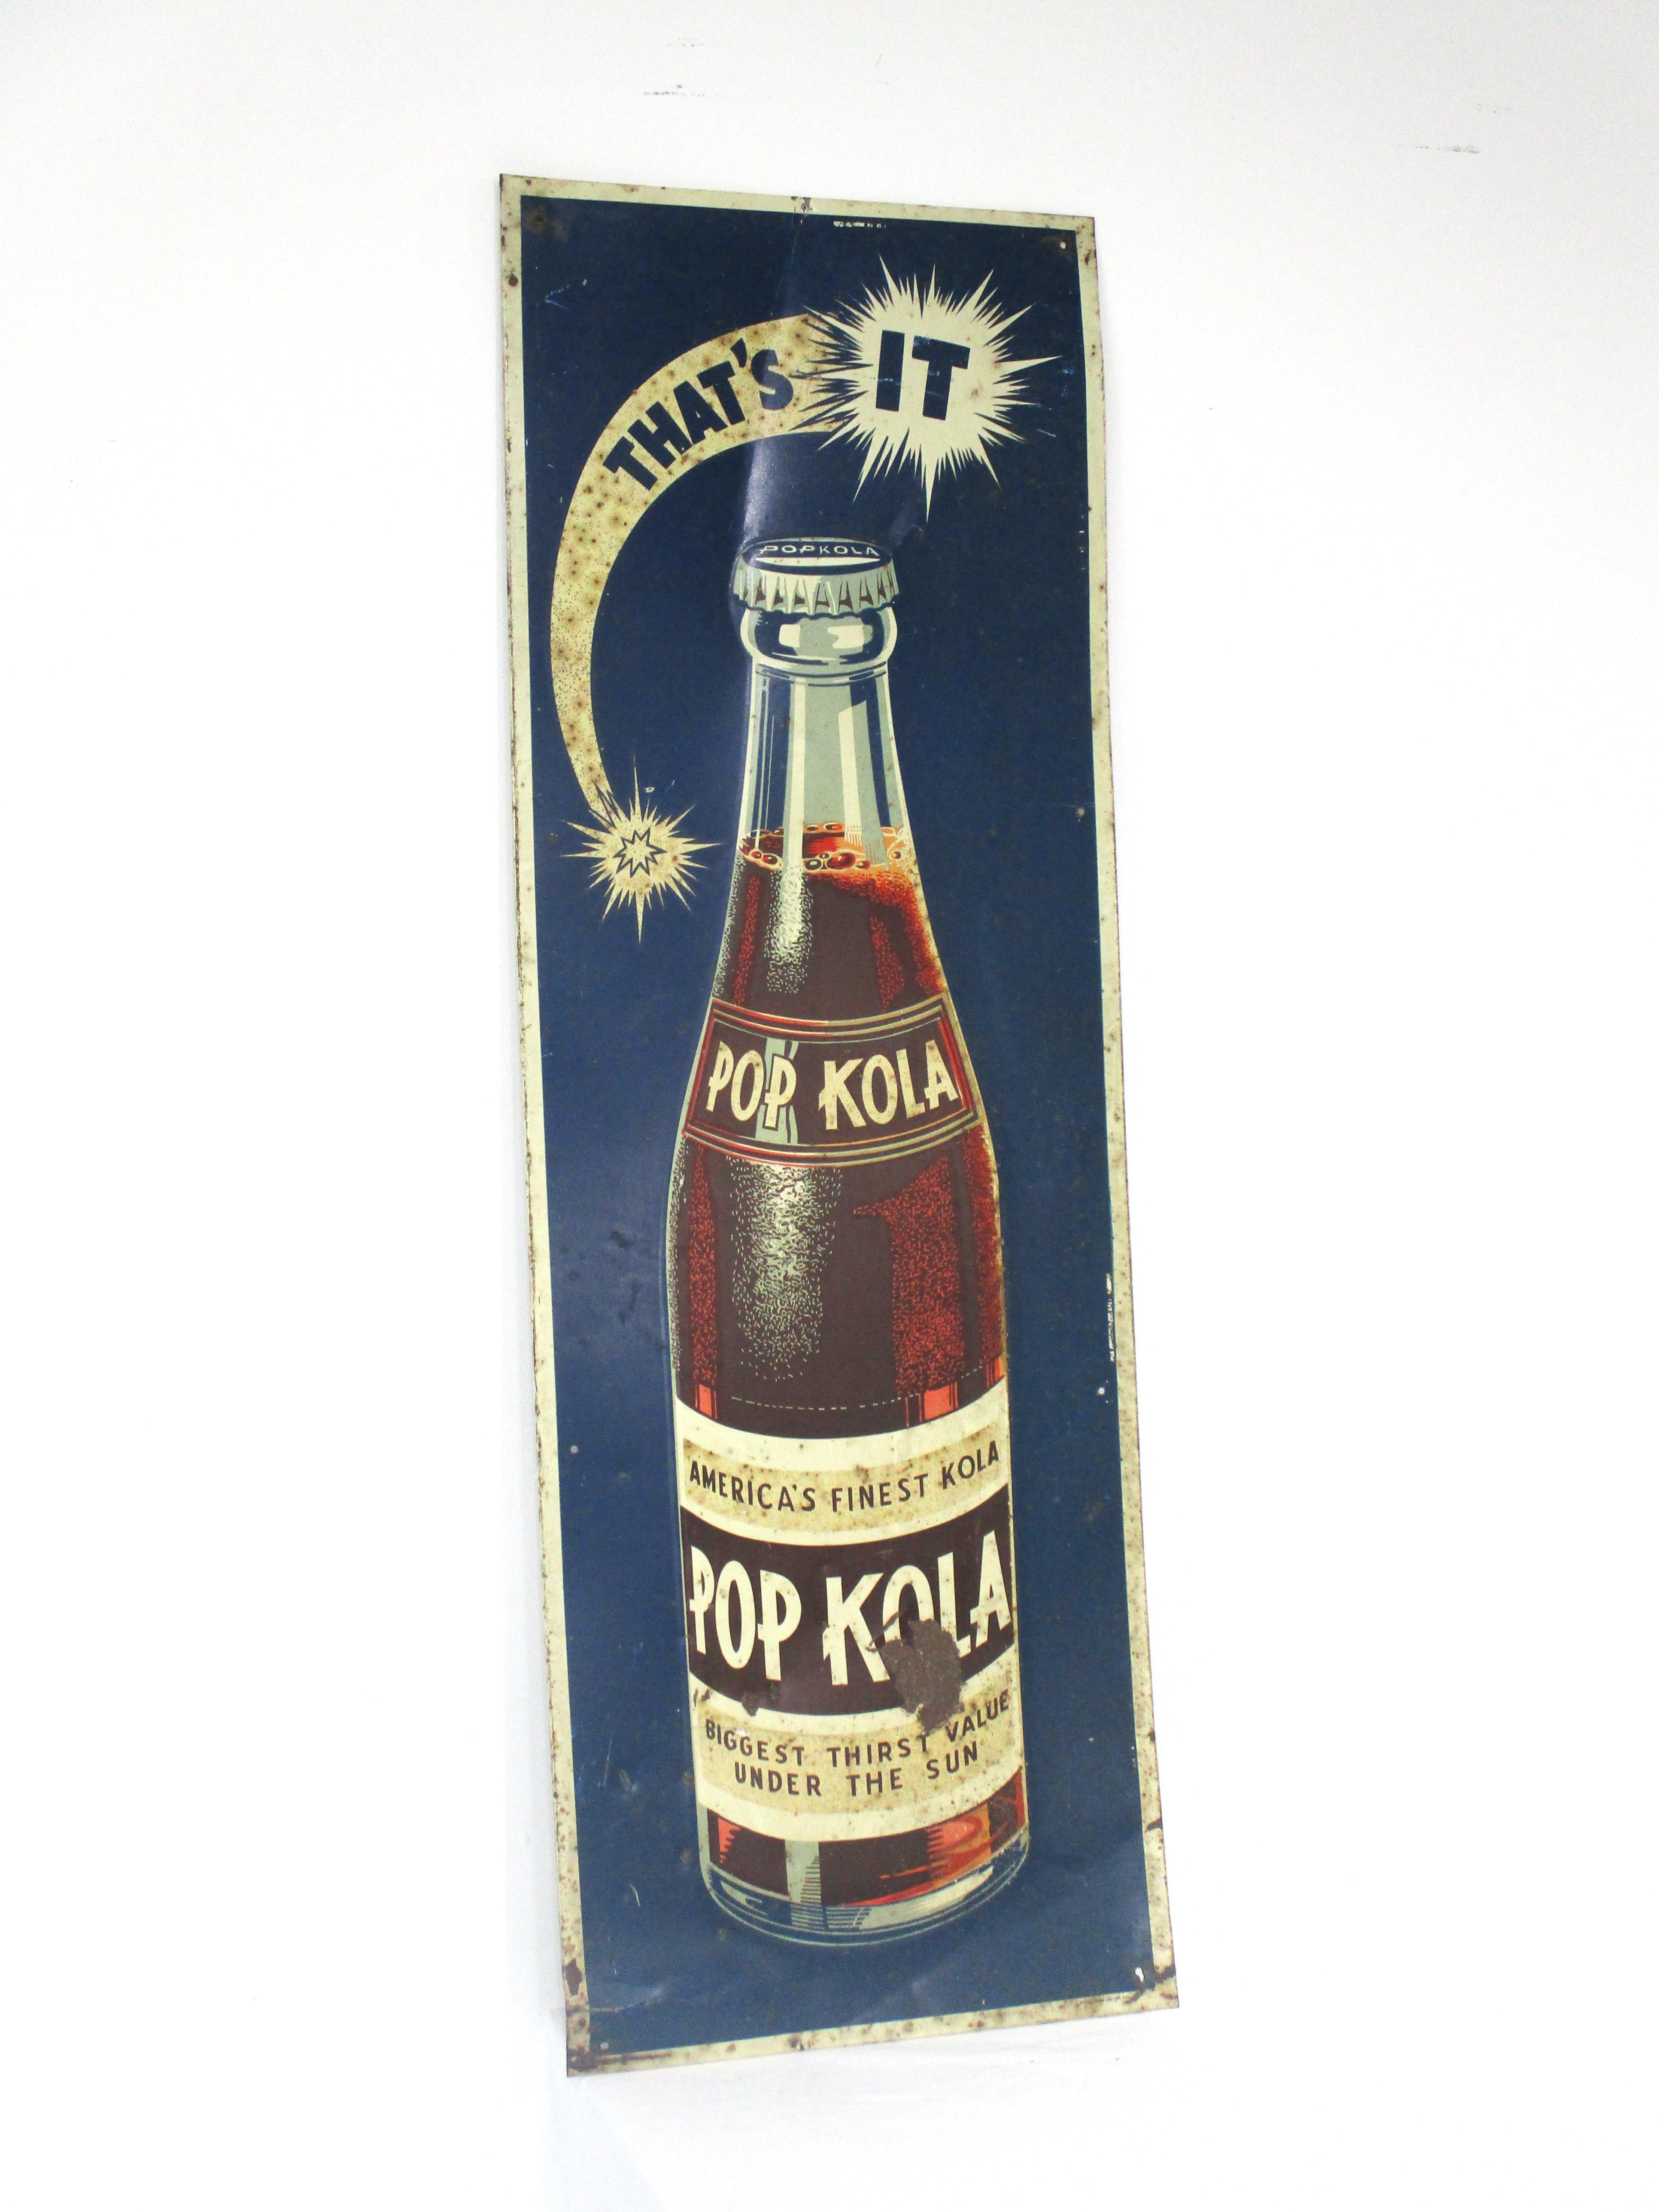 A vintage advertising sign for Pop Kola 